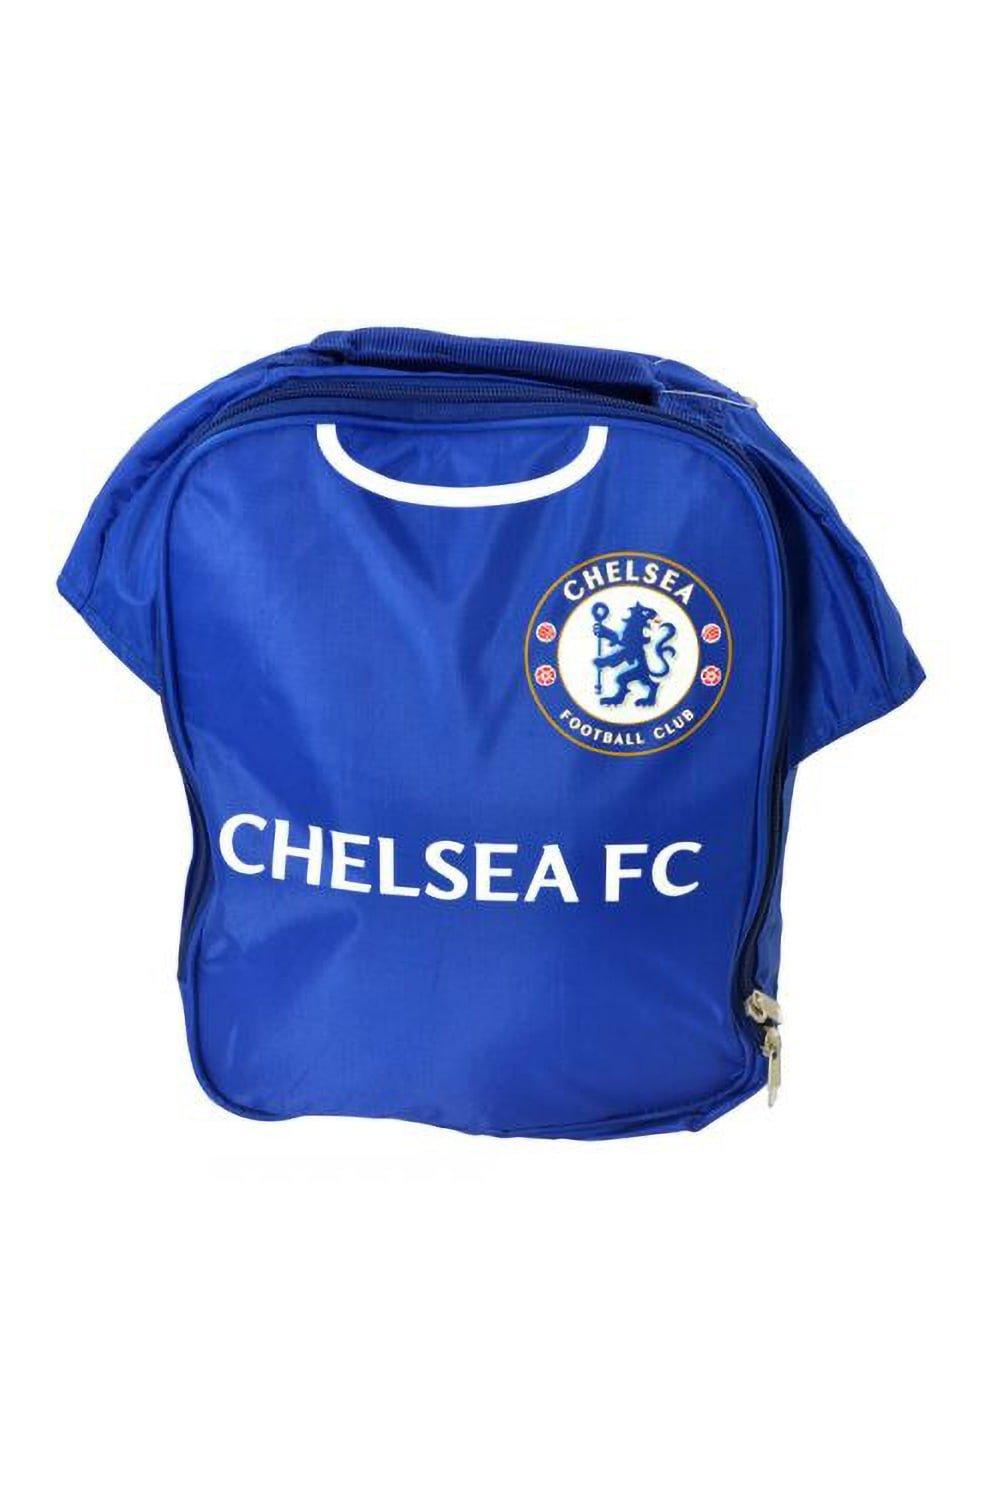 Официальная сумка для обеда футбольной формы Chelsea FC, синий ручка сувенирная белгород